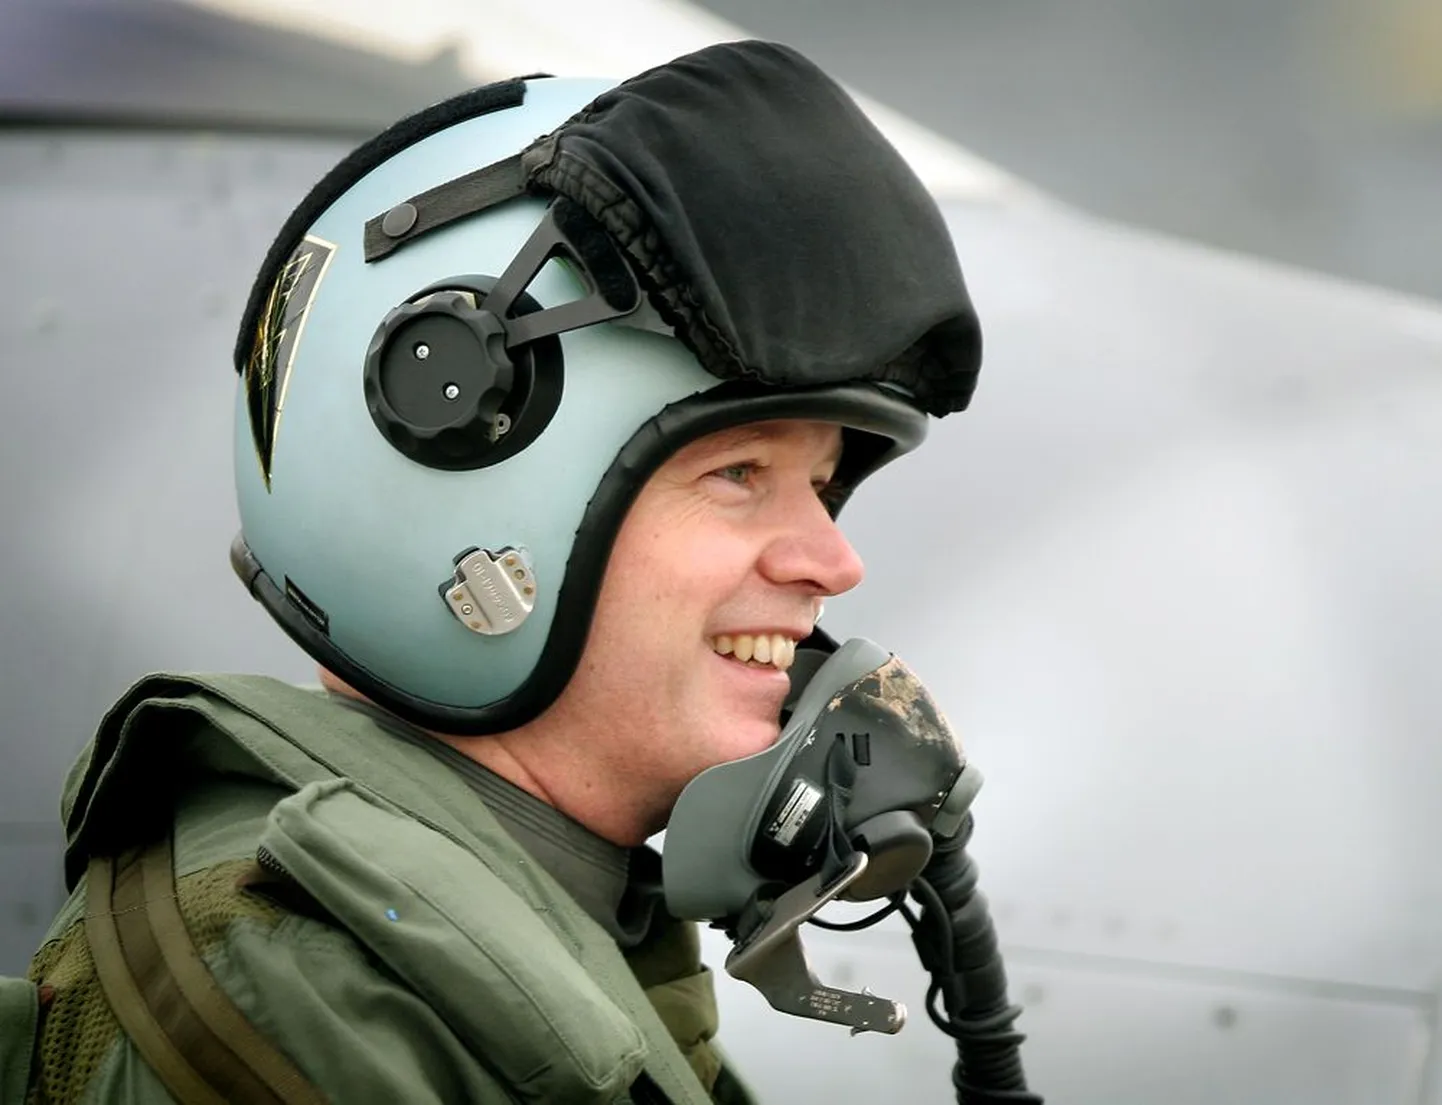 Rootsi kaitseminister Sten Tolgfors 2008. aastal riigi relvatööstuse ühe tuntuima ekspordiartikli, Saabi hävitaja JAS Gripen 39 pardal. Saudi Araabiale on Rootsi müünud näiteks radarisüsteemi Erieye.